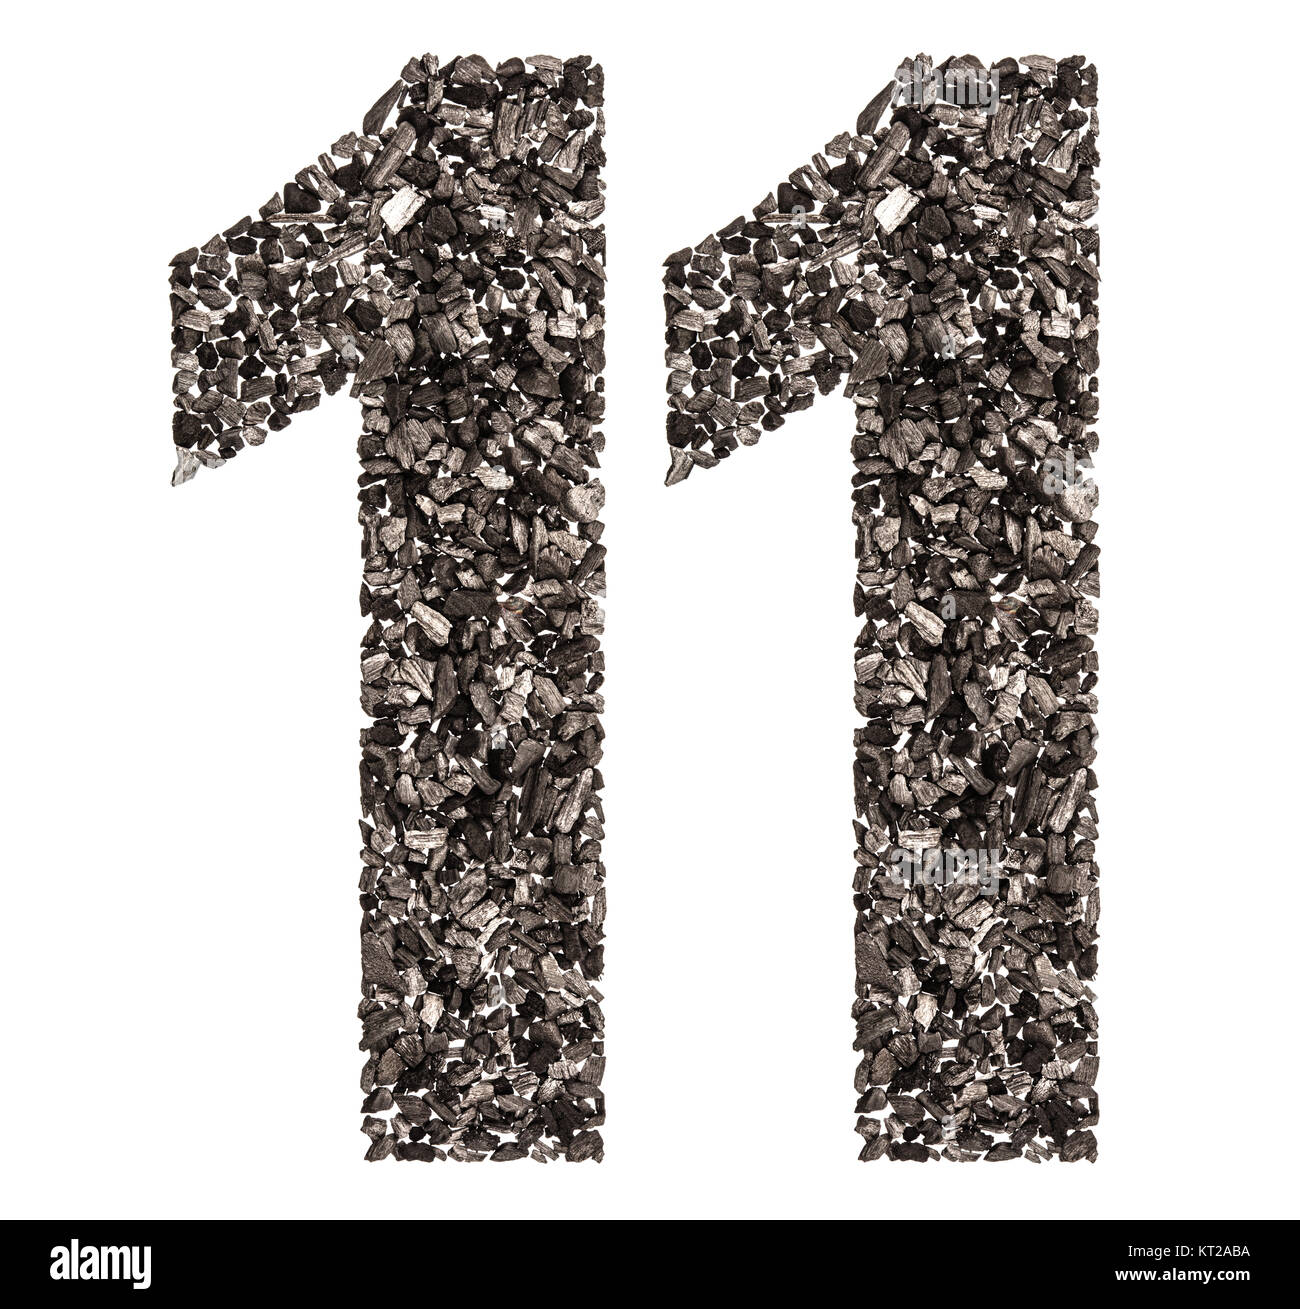 Numero arabo 11, undici, dal nero di un carbone naturale, isolato su sfondo bianco Foto Stock